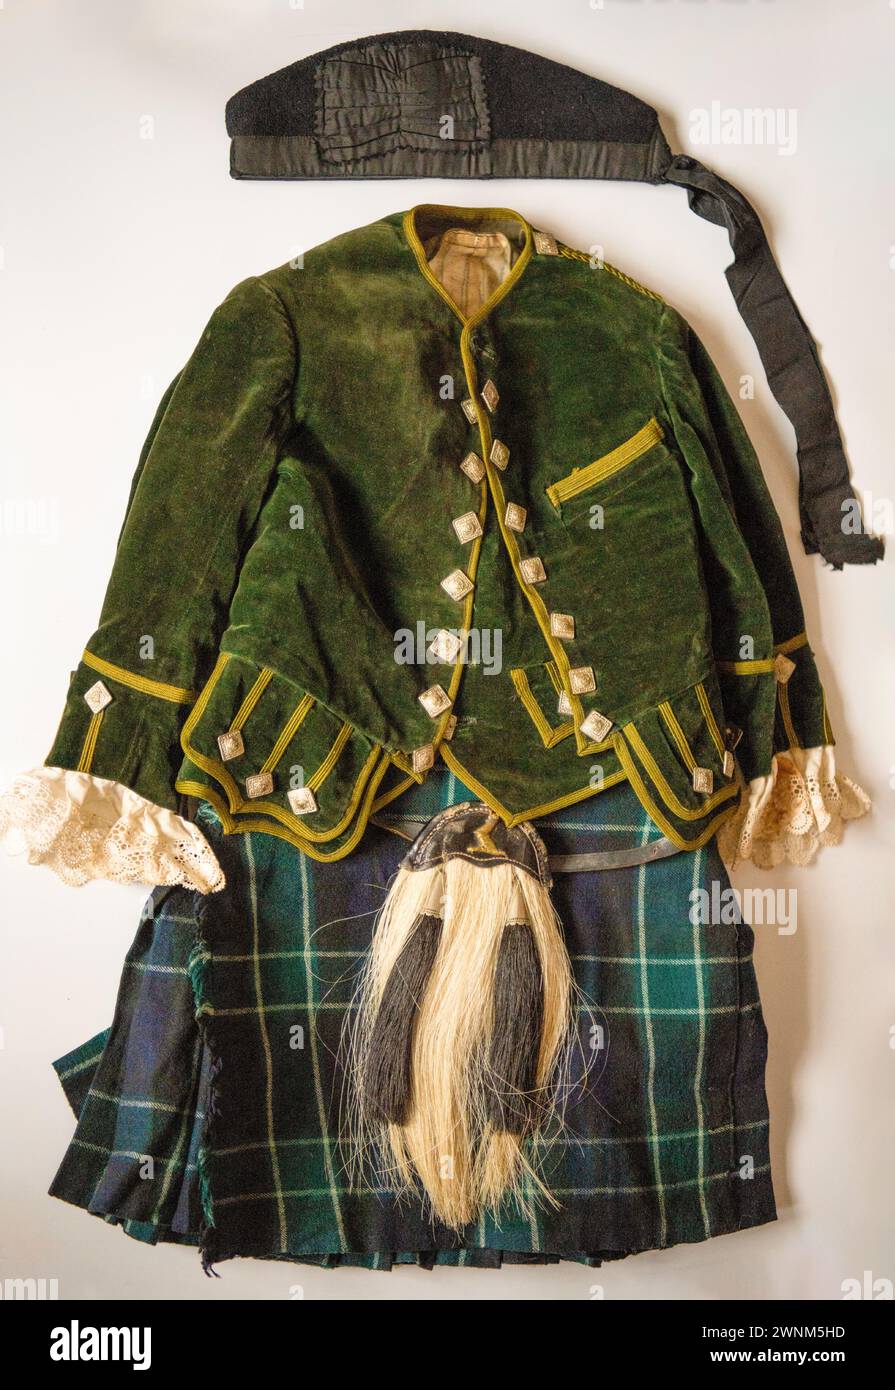 Une tenue de clan vintage de quatre ans, environ 1910, tartan inconnu avec broche écossaise, bonnet Glengarry et sporran Banque D'Images